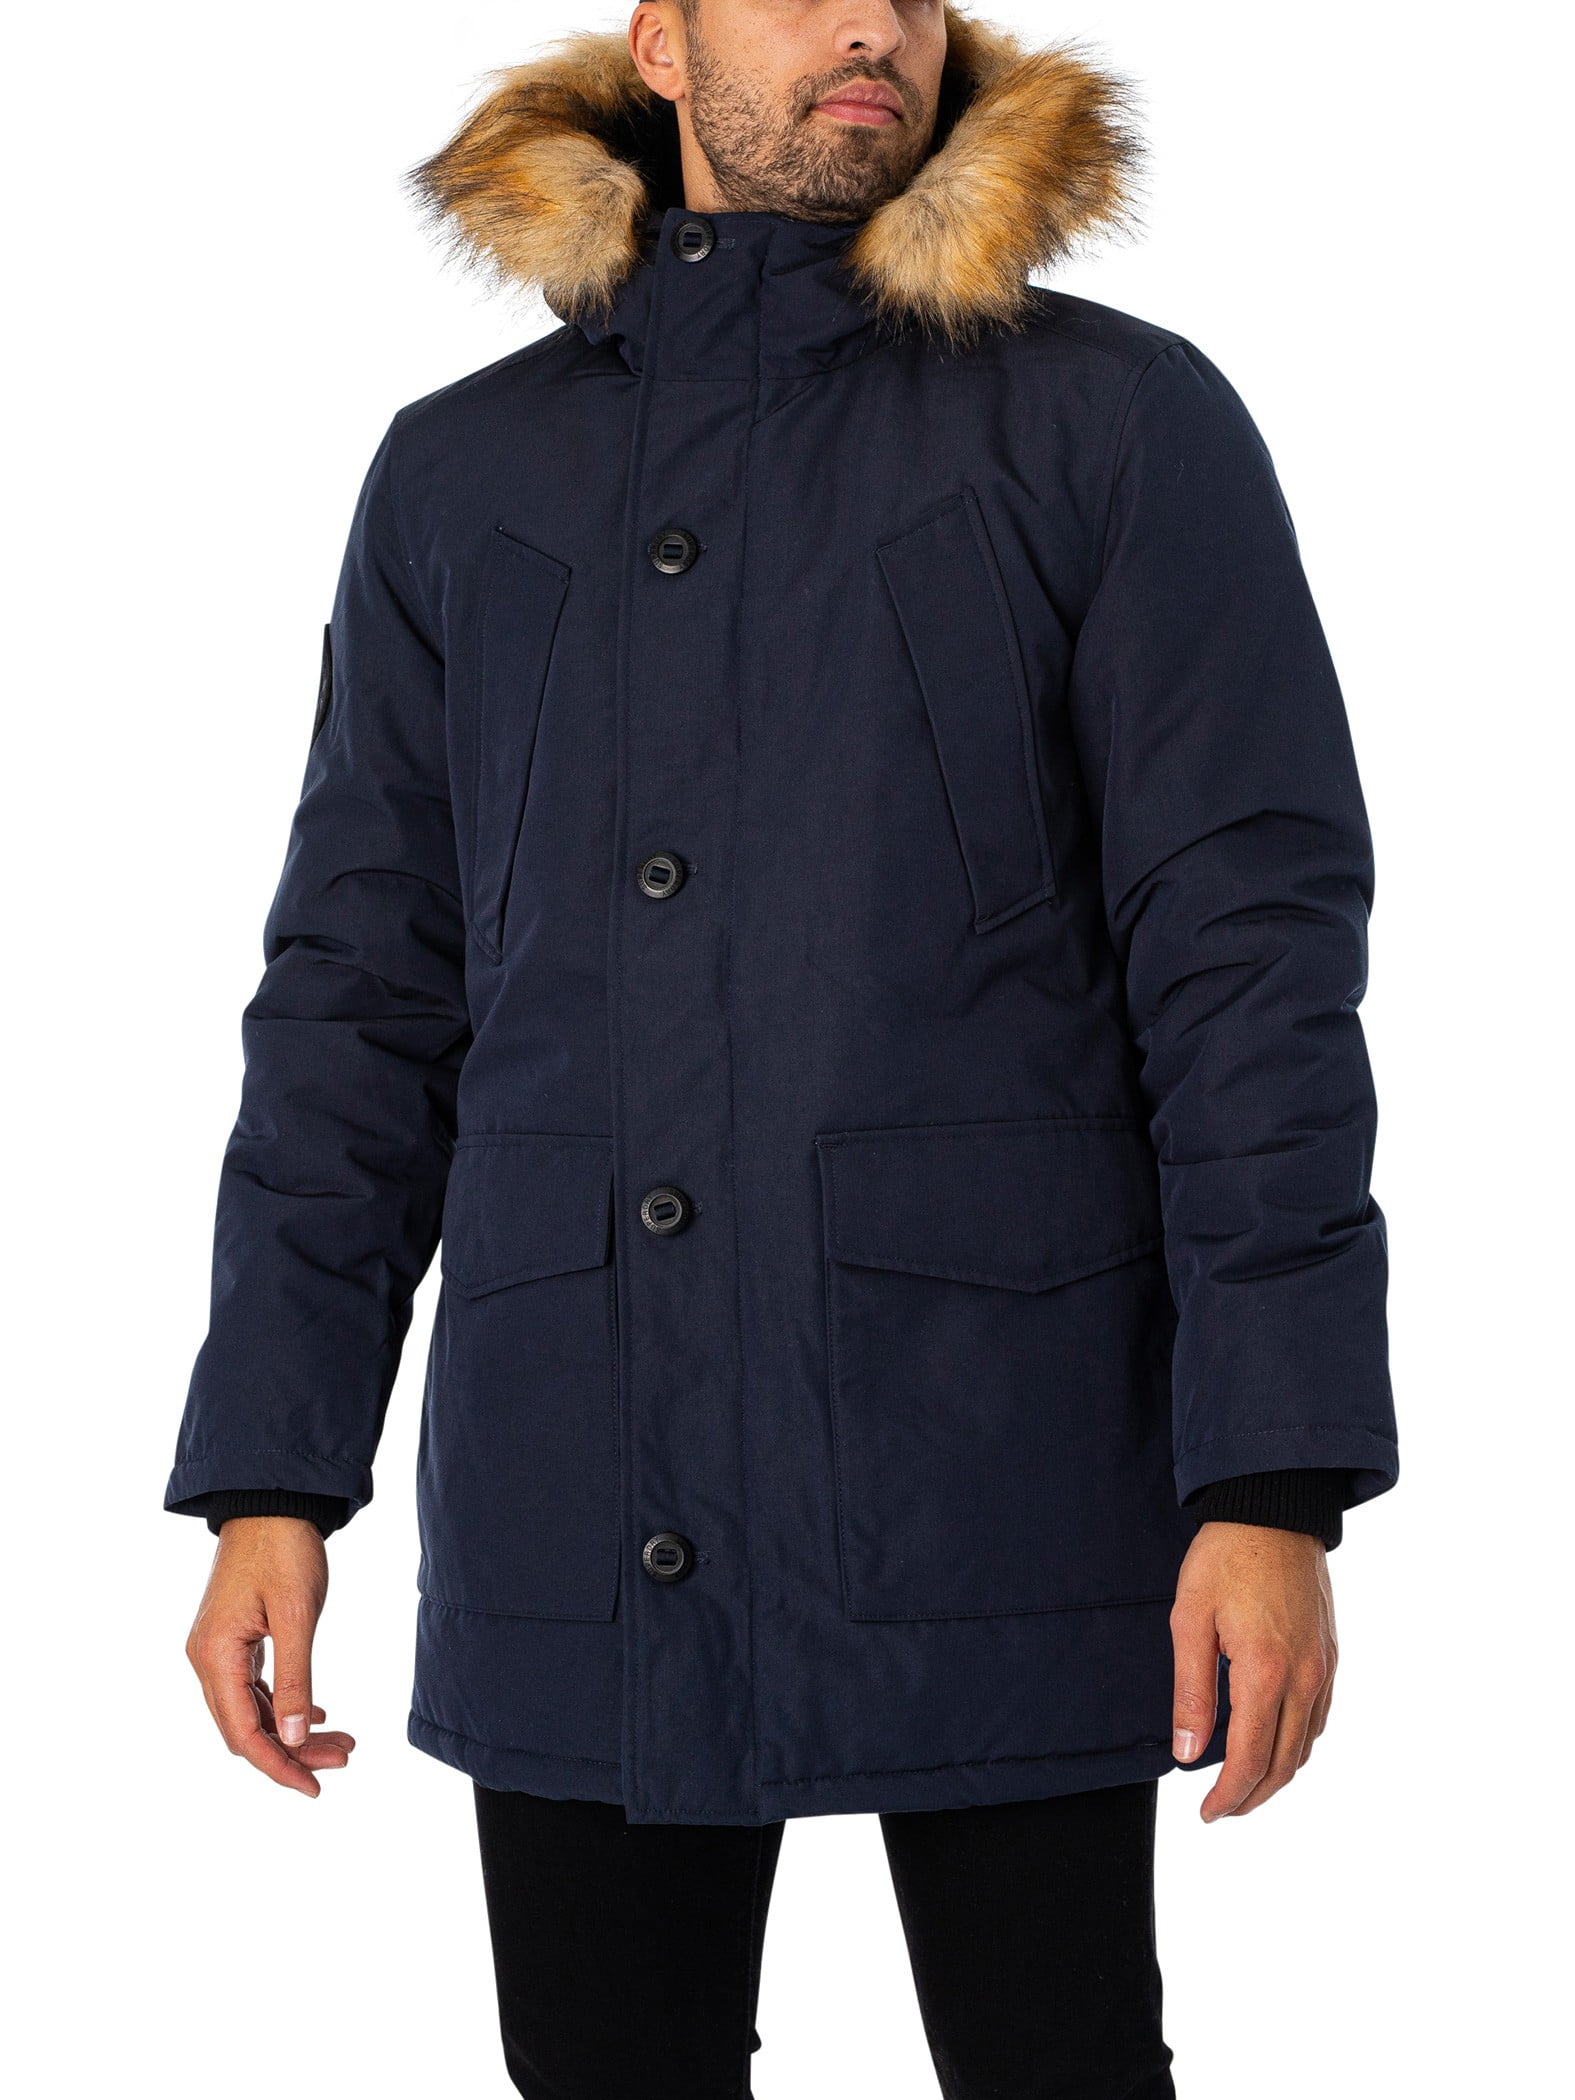 Superdry Everest Faux Fur Jacket, Parka Hooded Blue